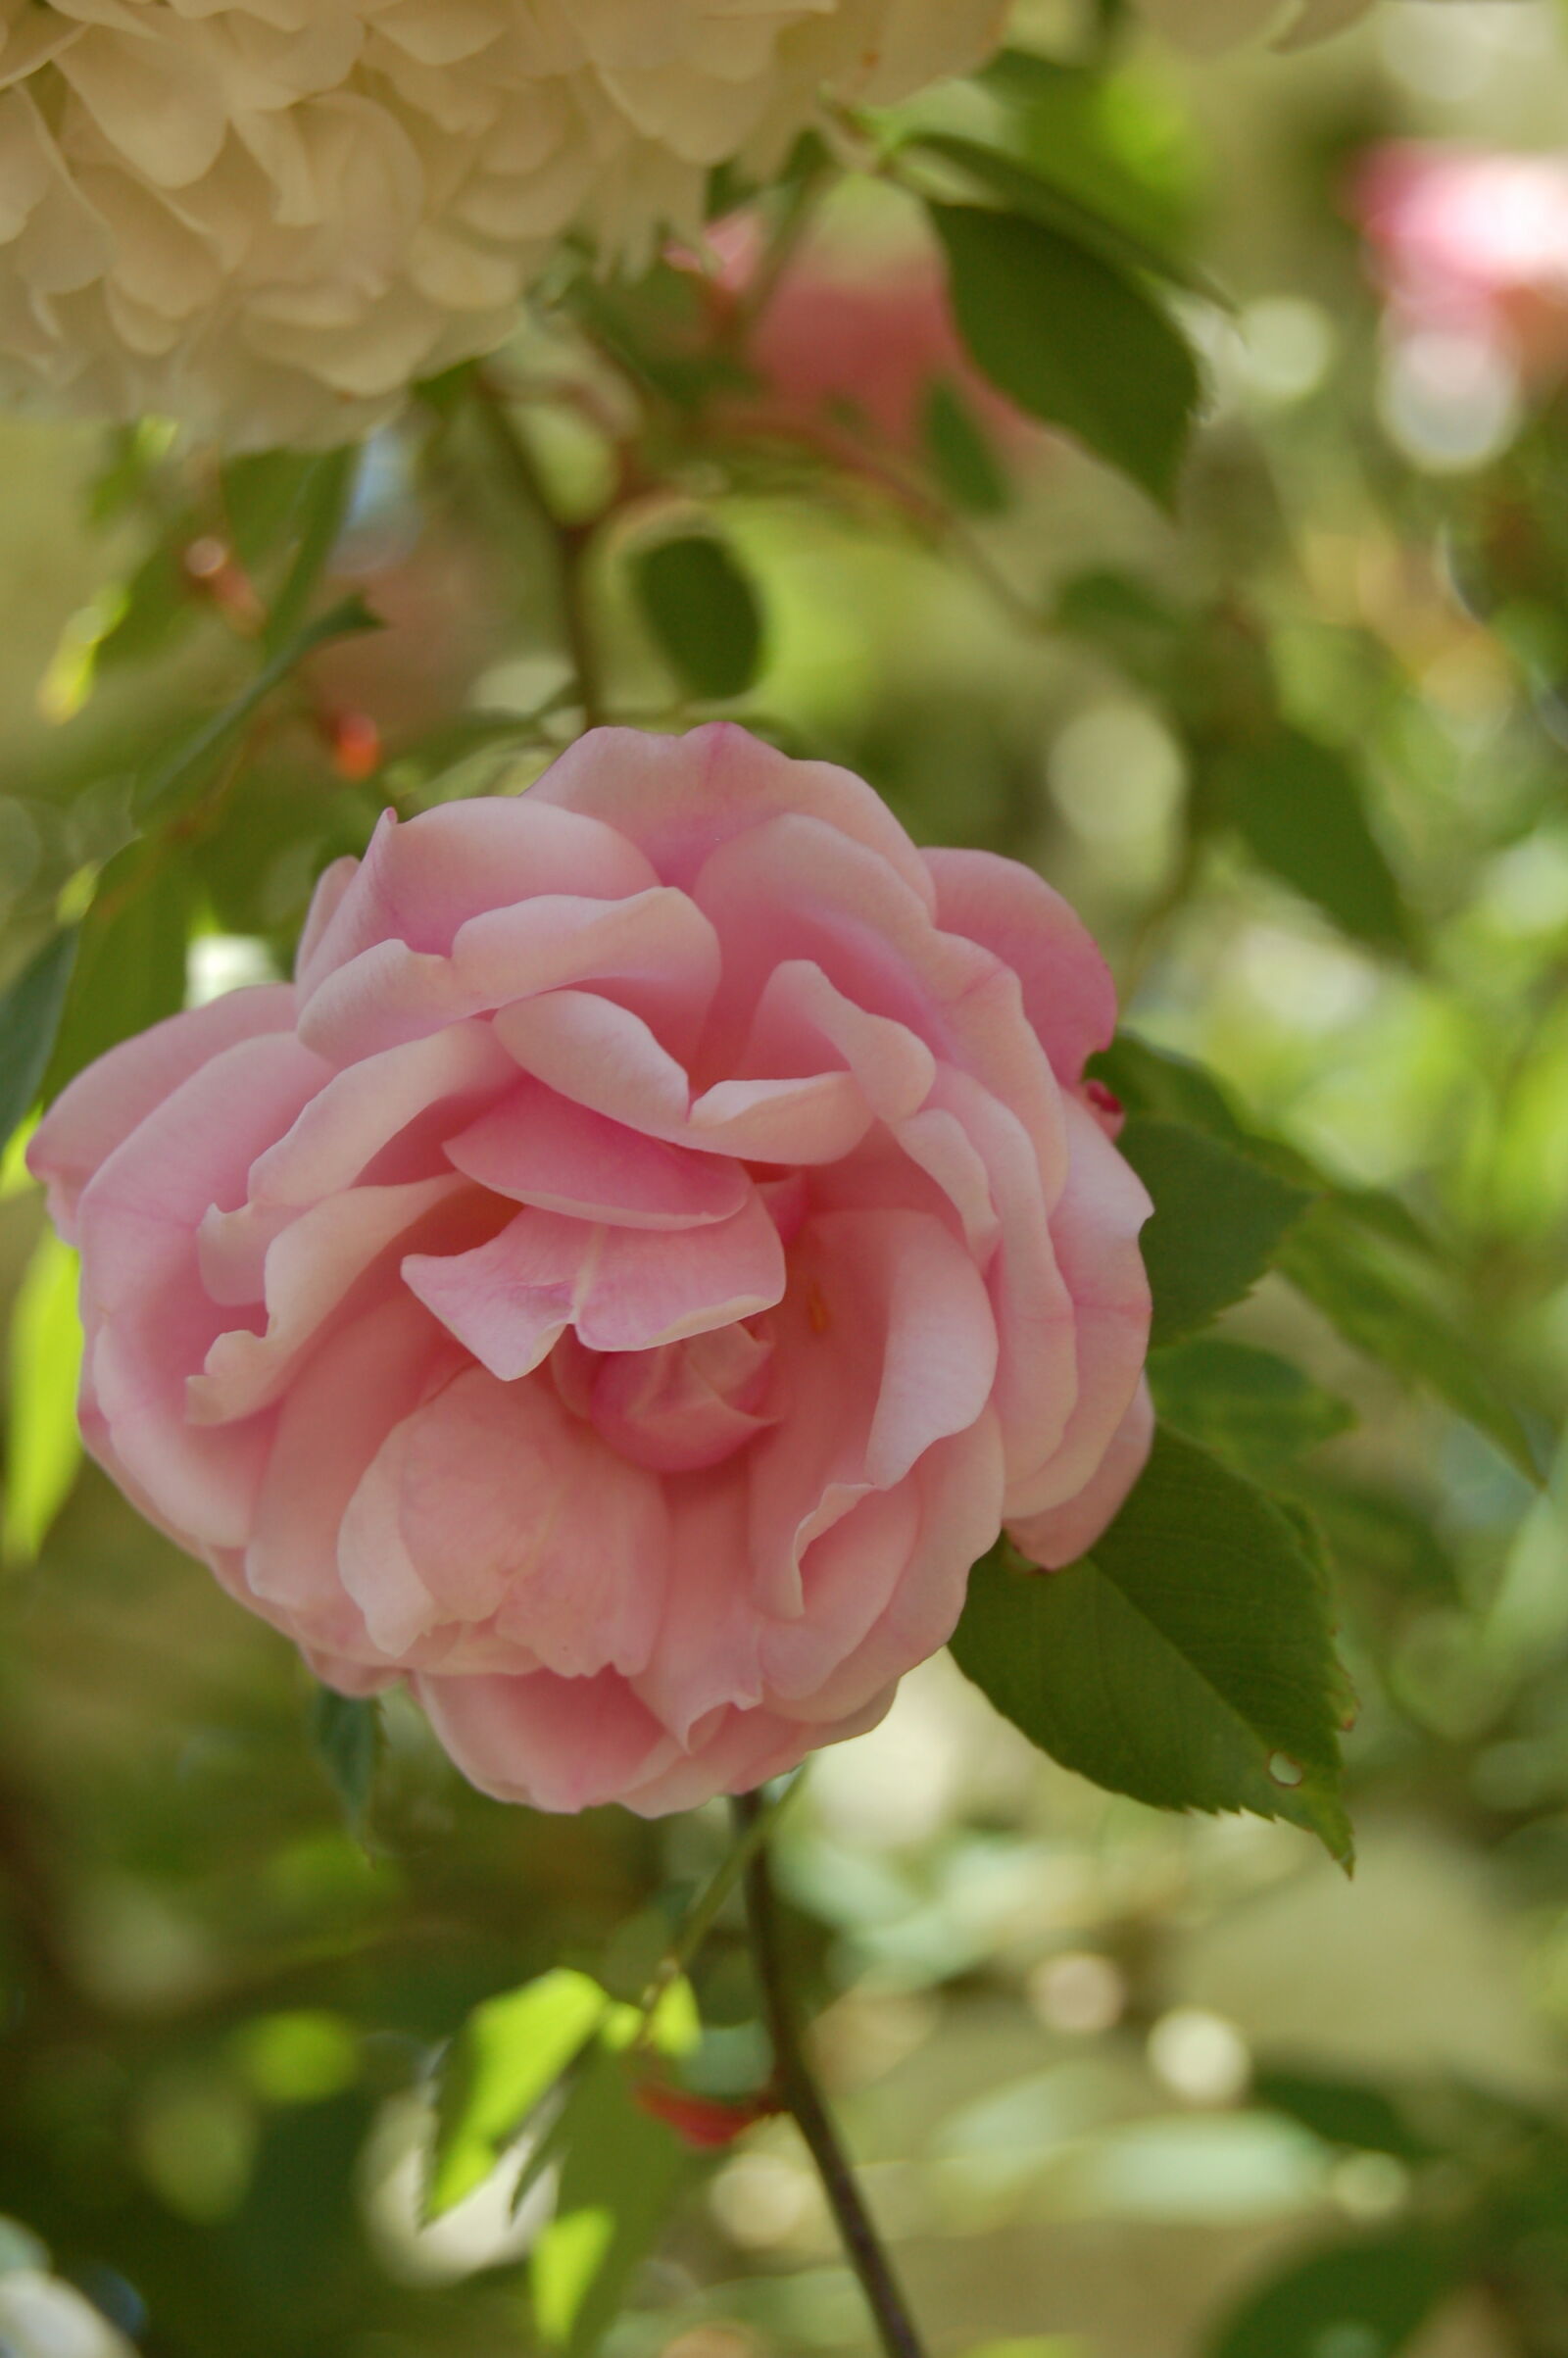 Nikon D50 + AF-S DX Zoom-Nikkor 18-55mm f/3.5-5.6G ED sample photo. Delicate, flower, flowers, pink photography